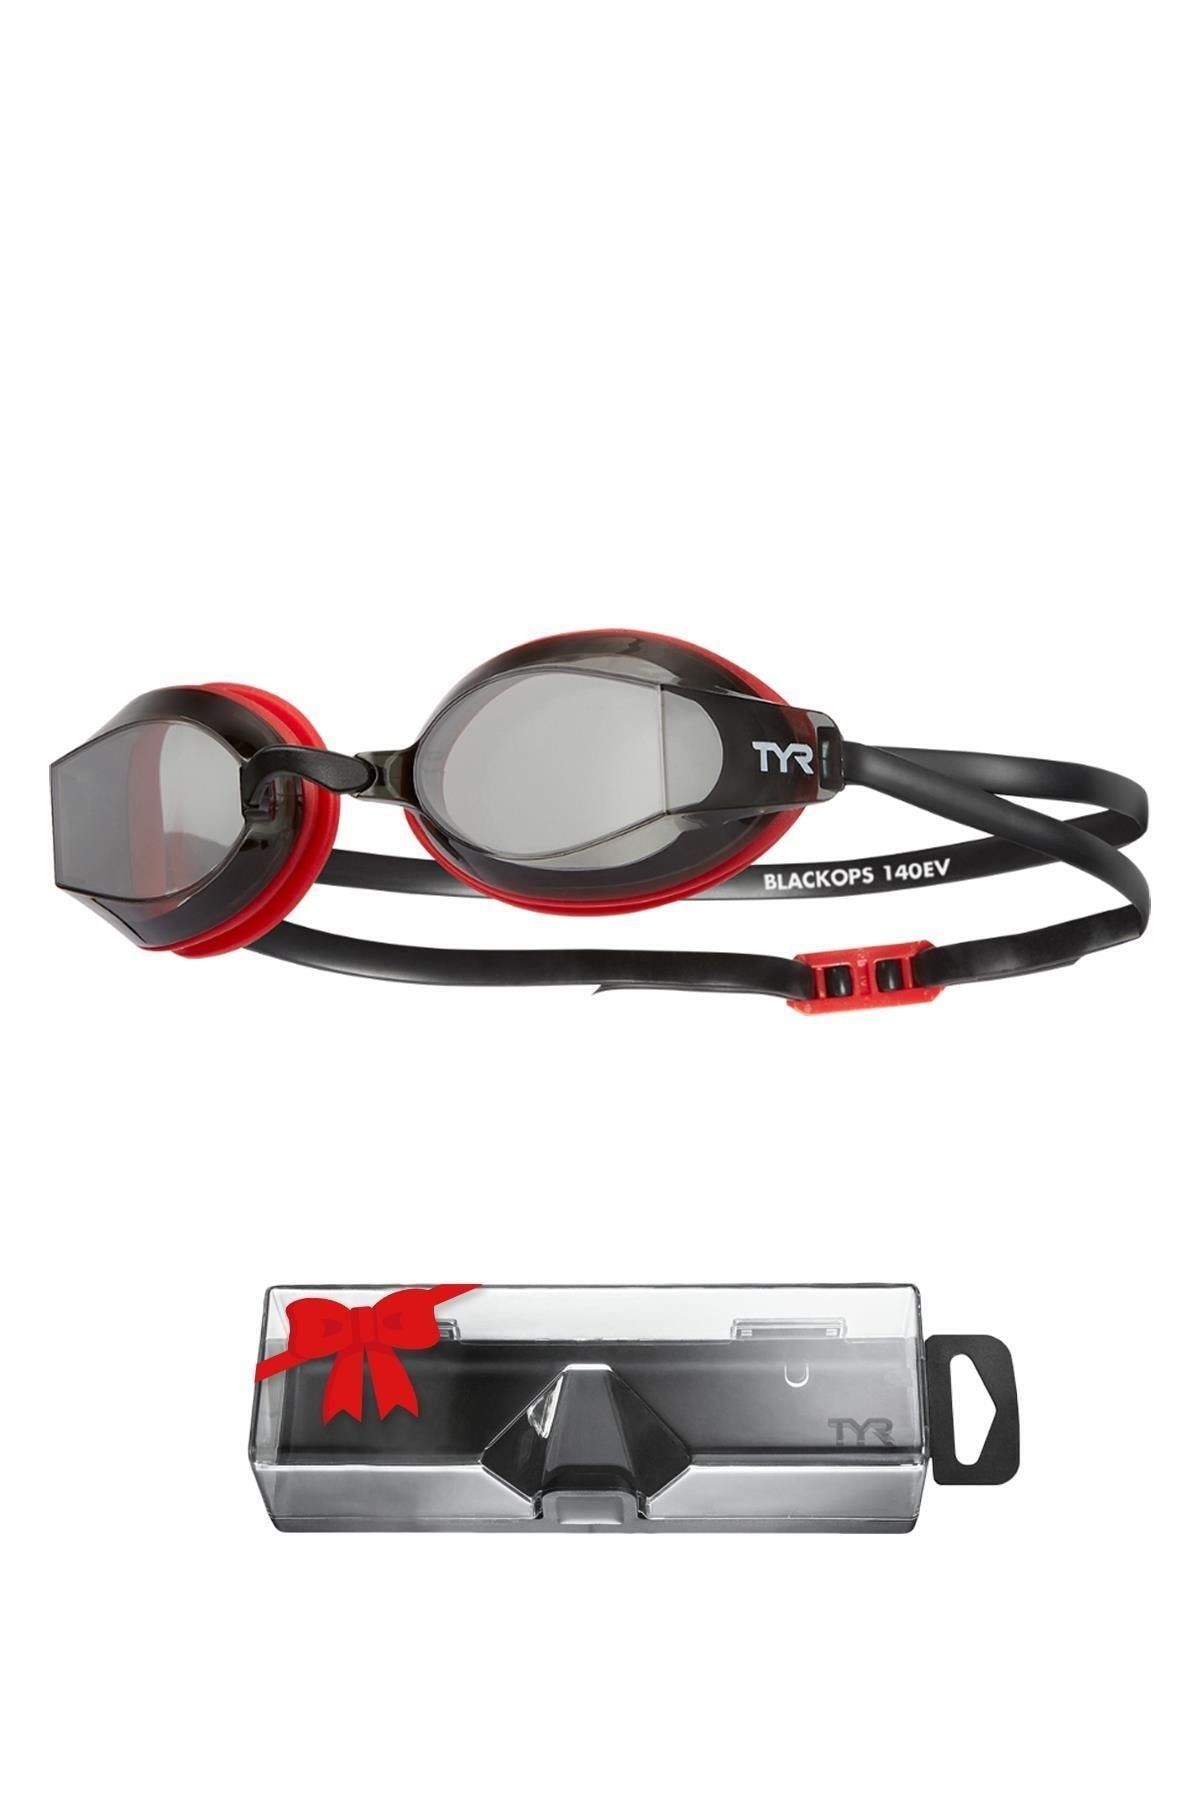 TYR Sport TYR BlackOps 140° Füme/Kırmızı Yüzücü Gözlüğü, Antrenman Gözlük